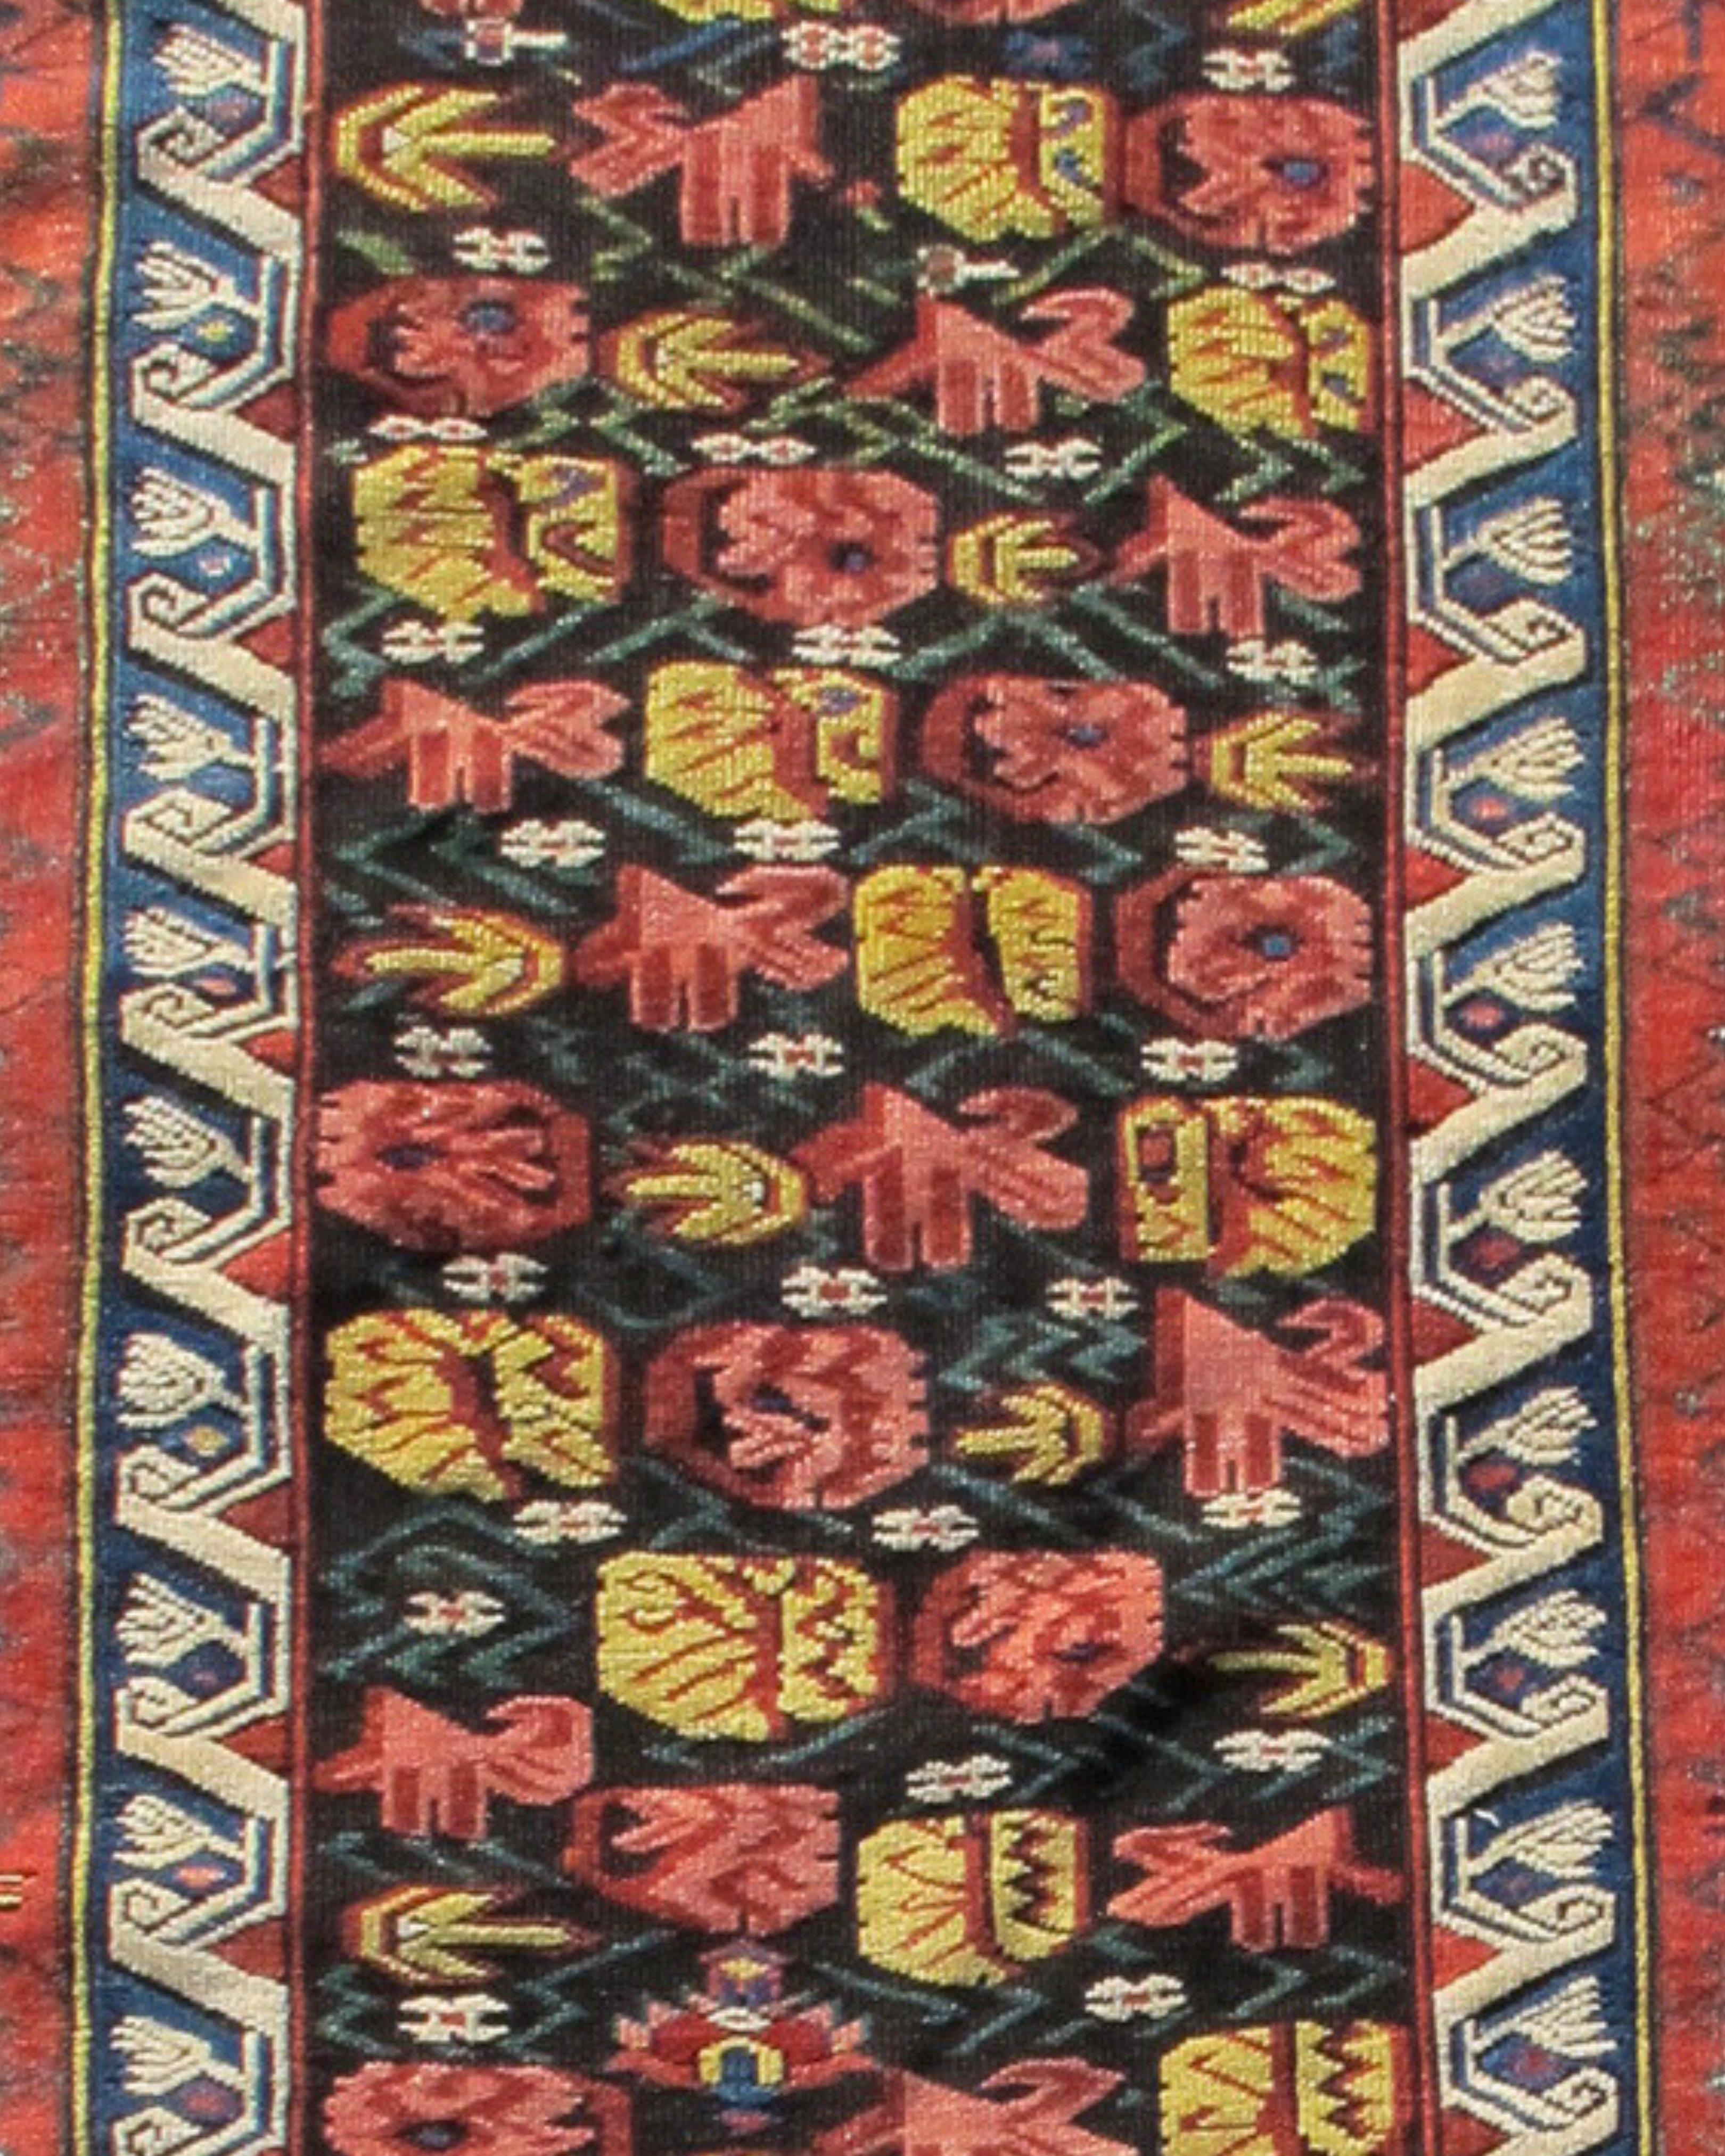 Antiker kaukasischer Seichor-Kuban-Teppich, spätes 19. Jahrhundert

Dieser farbenfrohe Kuba zeichnet ein sich wiederholendes Feld mit stilisierten Blumen und Blüten des Zeichur-Typs. Kräftige Farben wie Rosa, Rot und Gold sowie grünes Laub kommen